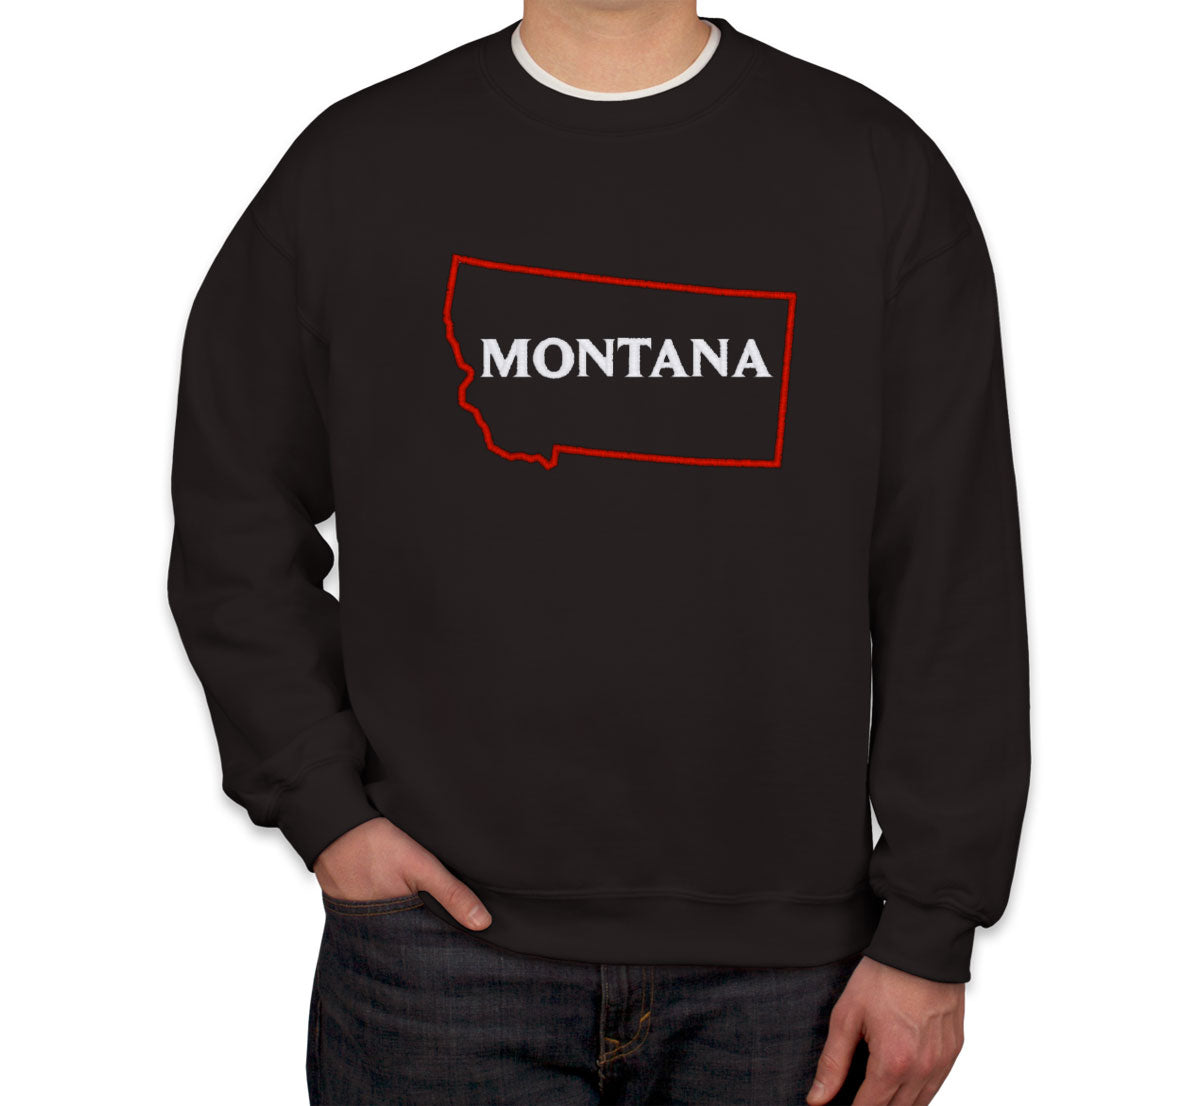 Montana Embroidered Unisex Sweatshirt